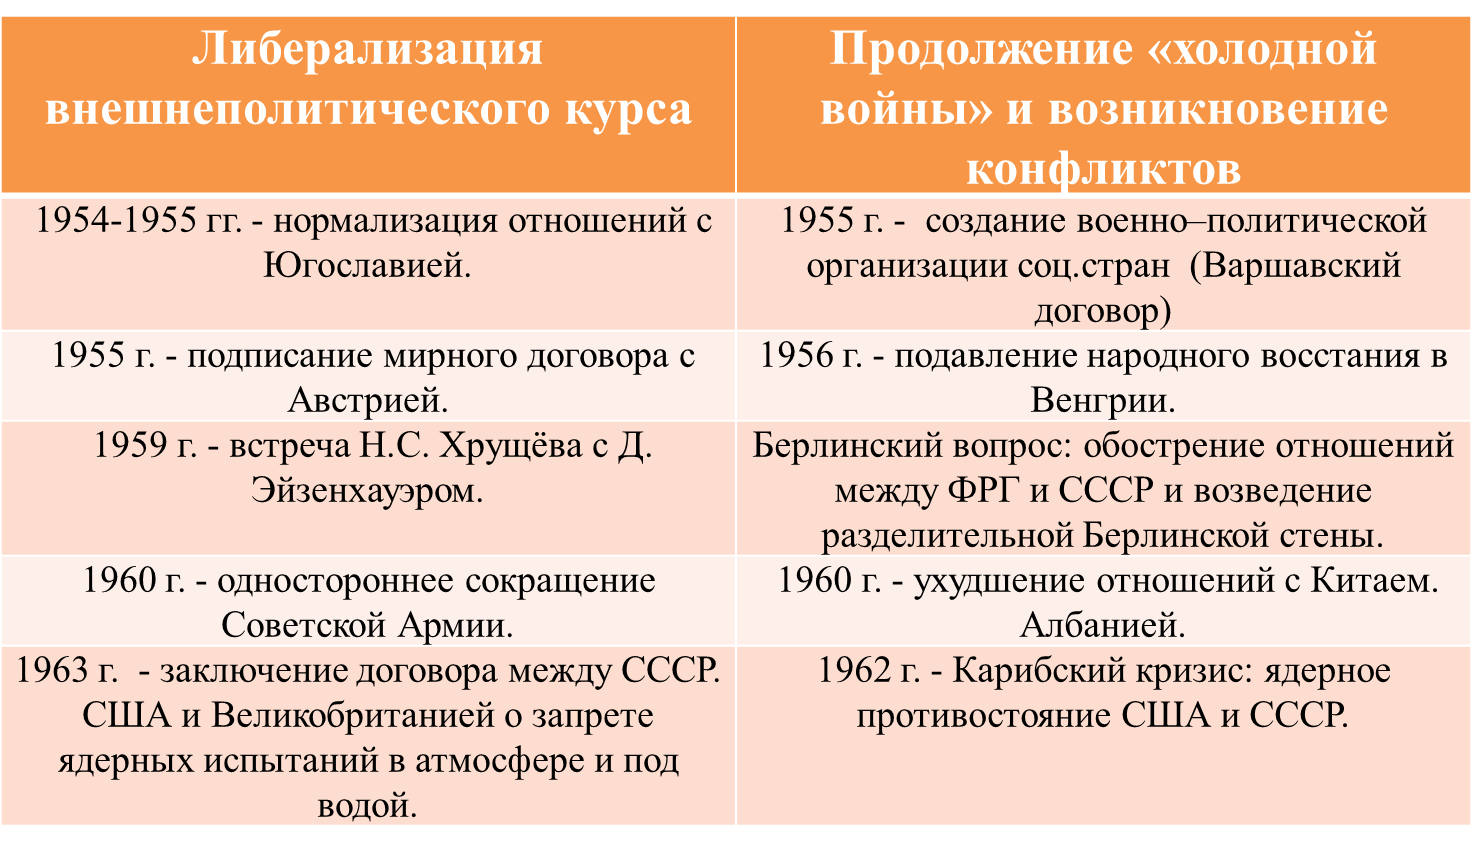 Внешняя и внутренняя политика Хрущева кратко таблица. Внешняя политика Хрущева события. Хрущев внешняя политика и внутренняя политика кратко. Хрущев внутренняя политика 1953-1964.